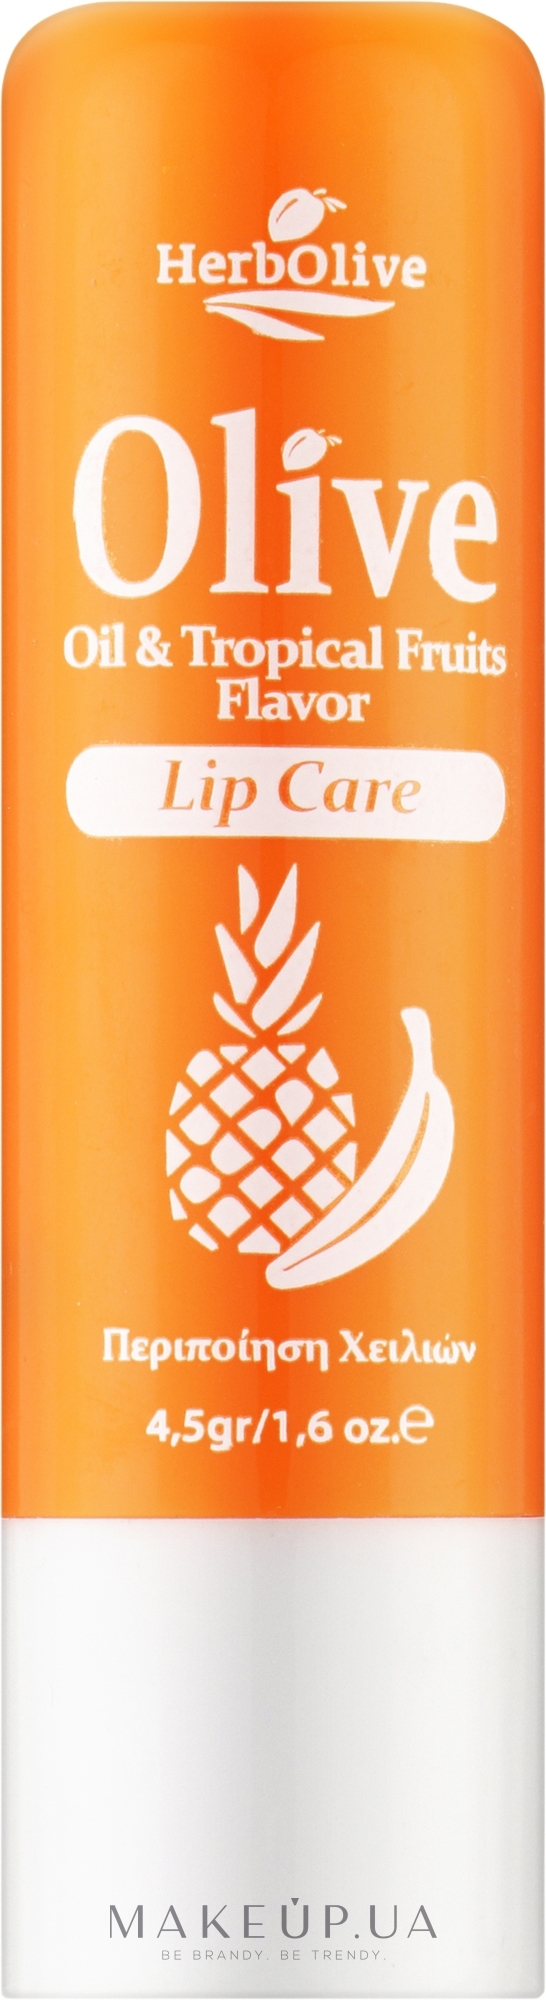 Бальзам для губ с тропическими фруктами - Madis HerbOlive Lip Care — фото 4.5g